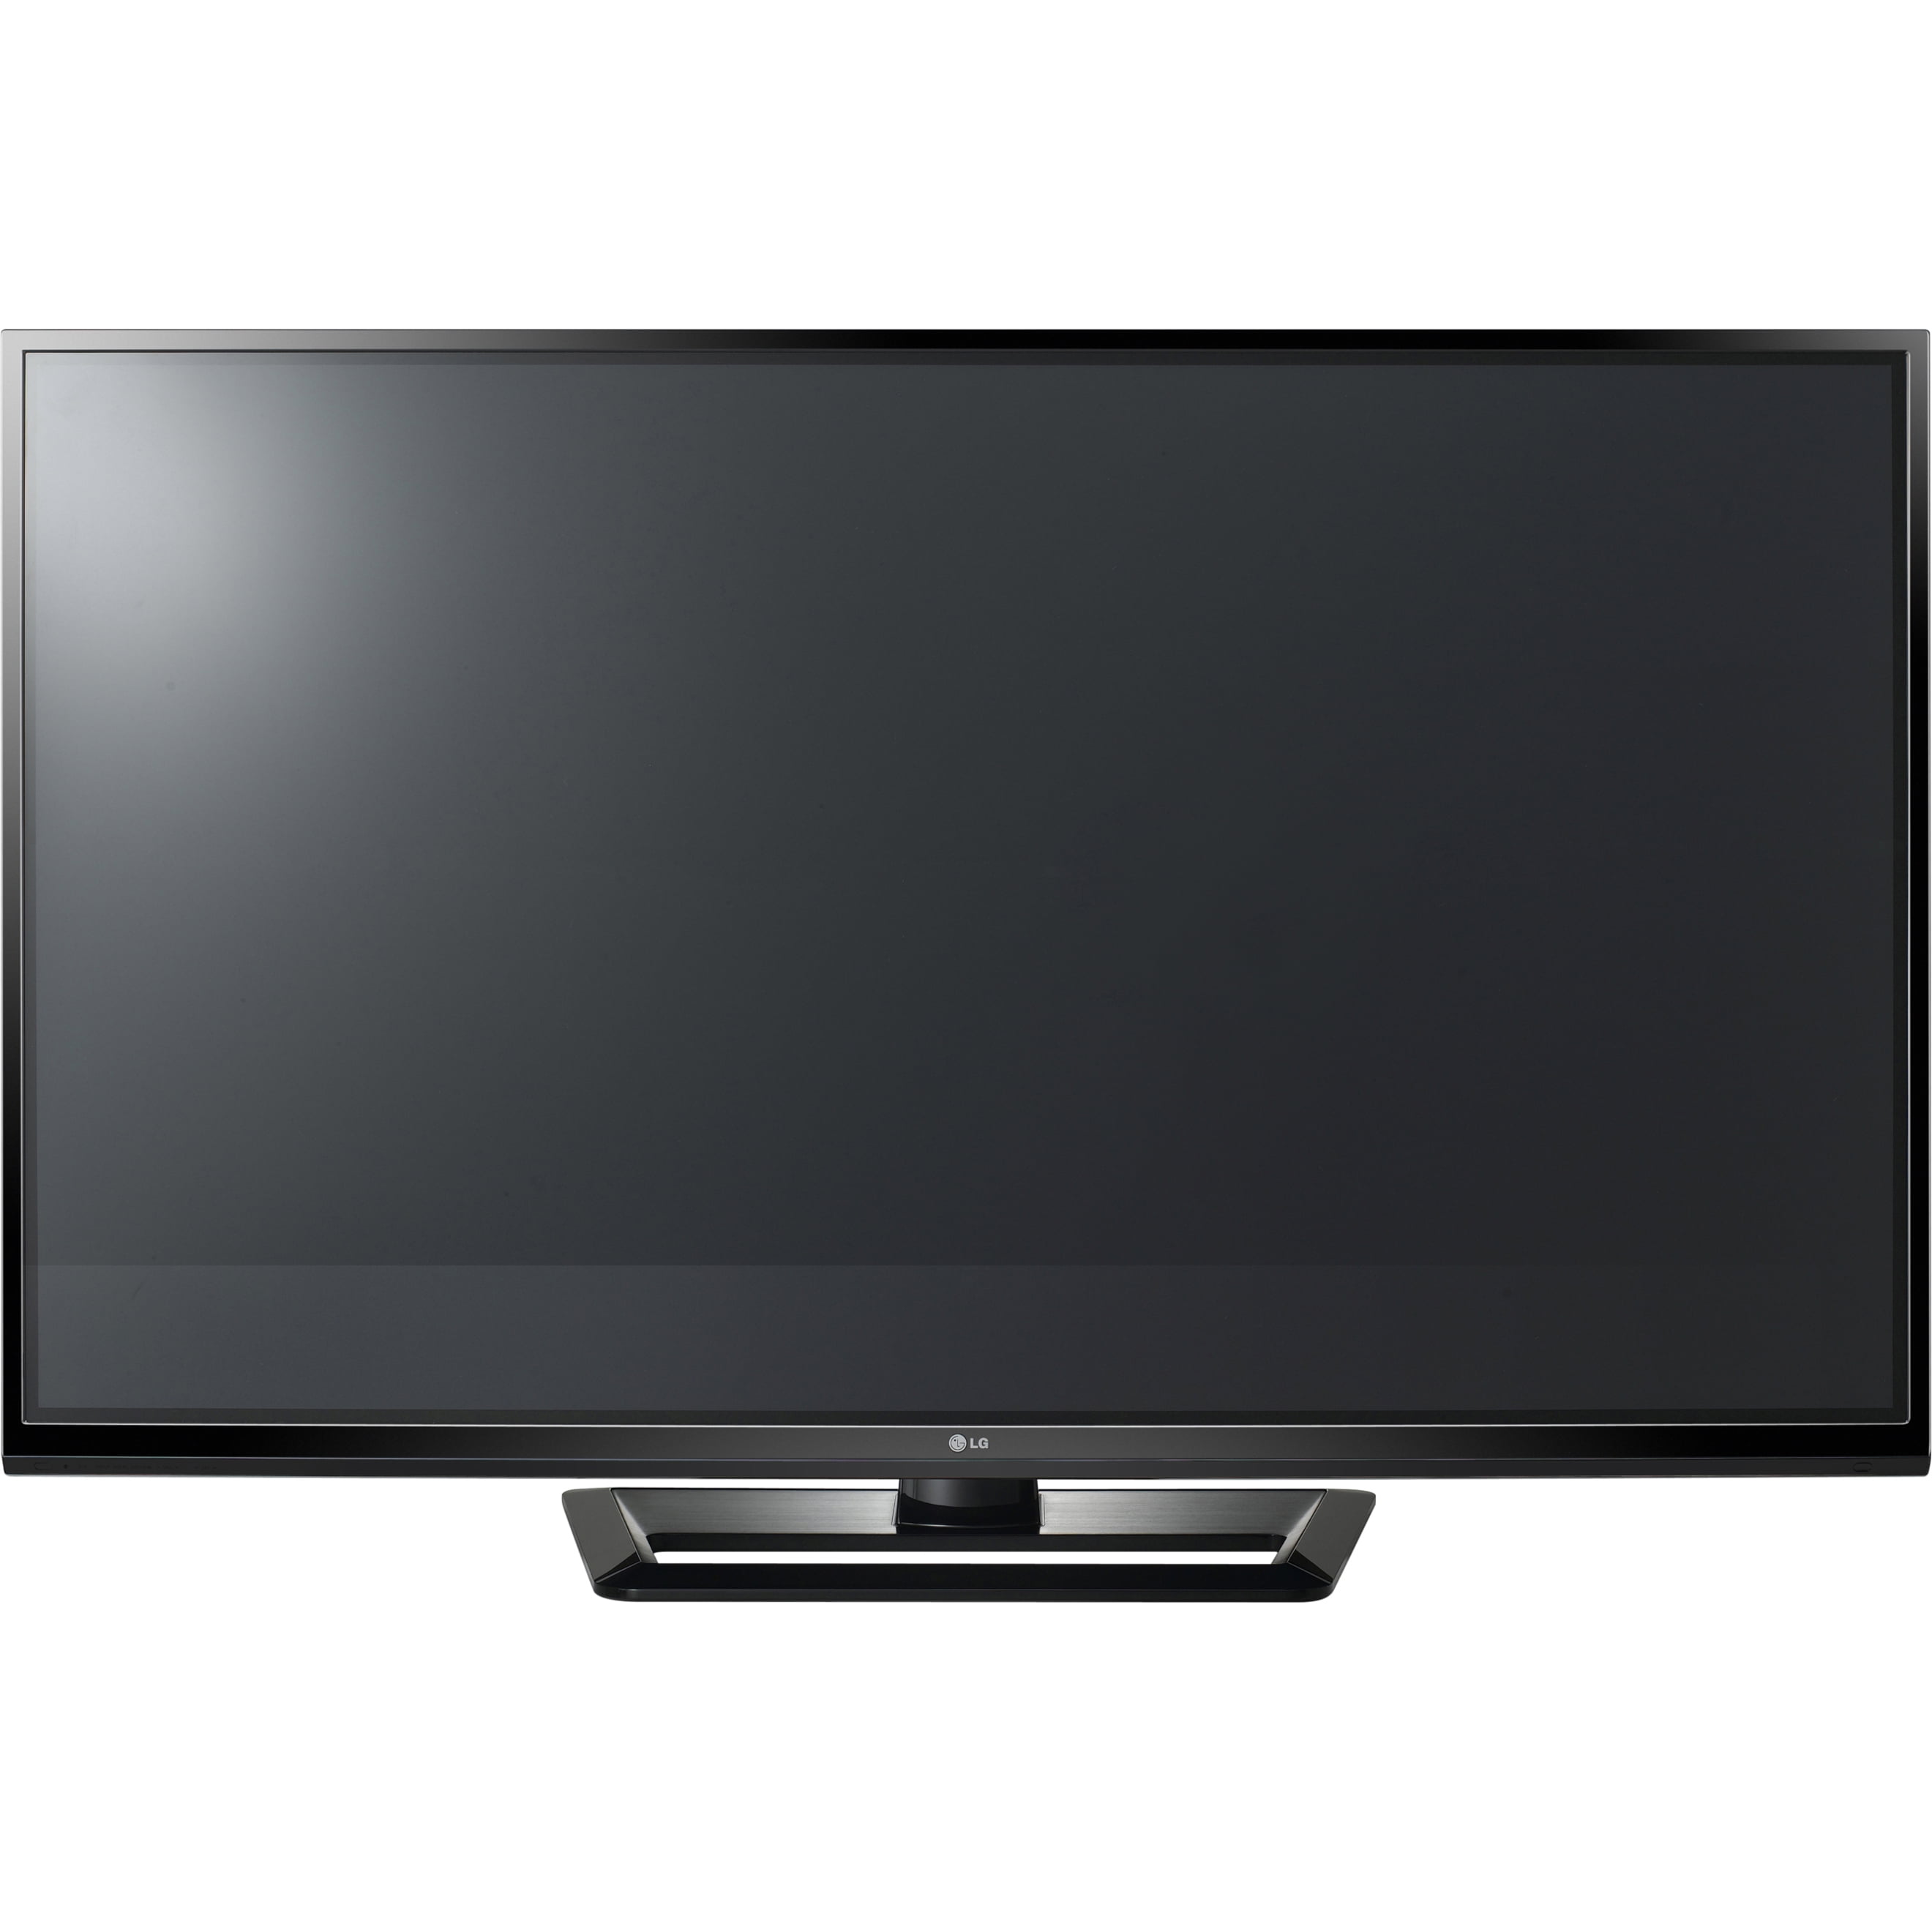 Ambiente Pila de rociar LG 50" Class HDTV (720p) Plasma TV (50PA4500) - Walmart.com